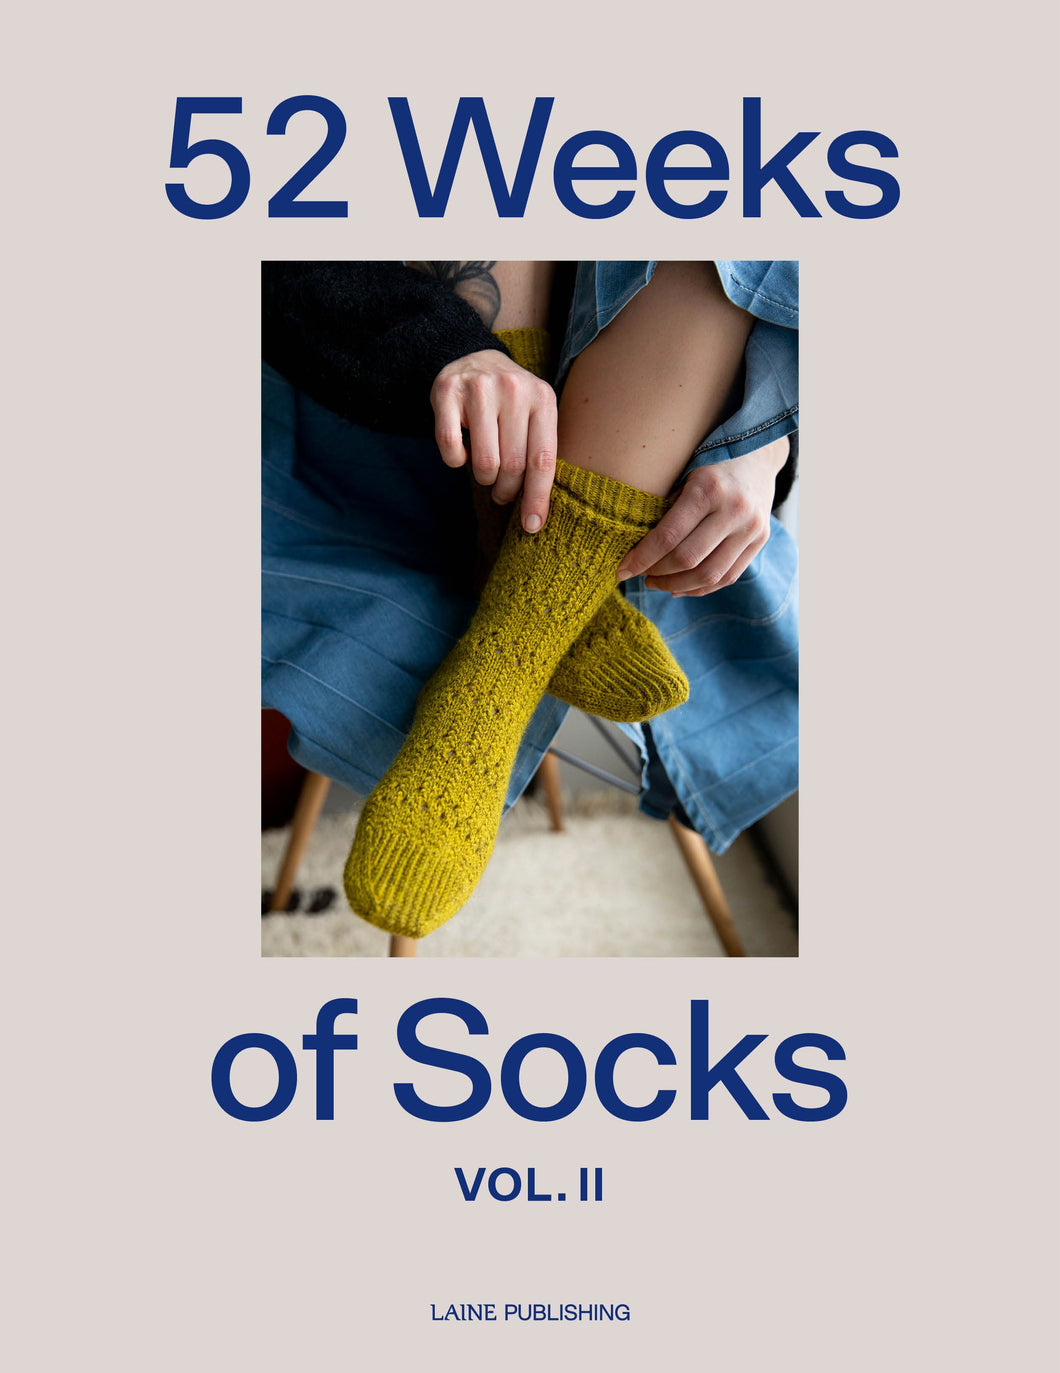 PREORDER 52 Weeks of Socks, Vol. ll